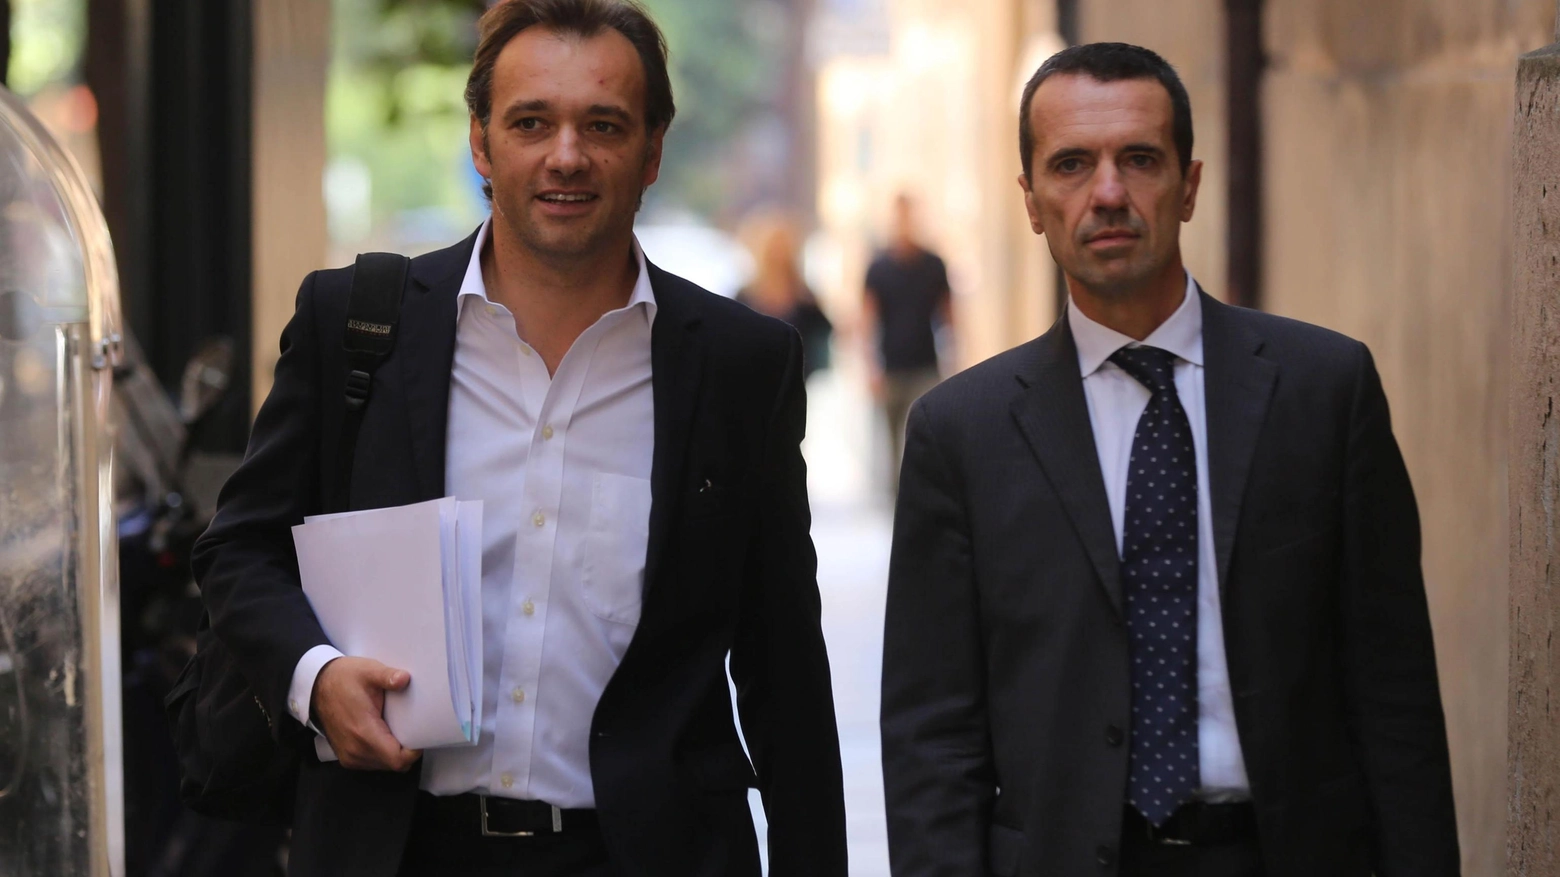 Matteo Richetti al suo arrivo in Procura accompagnato dall'avvocato (foto Ansa)